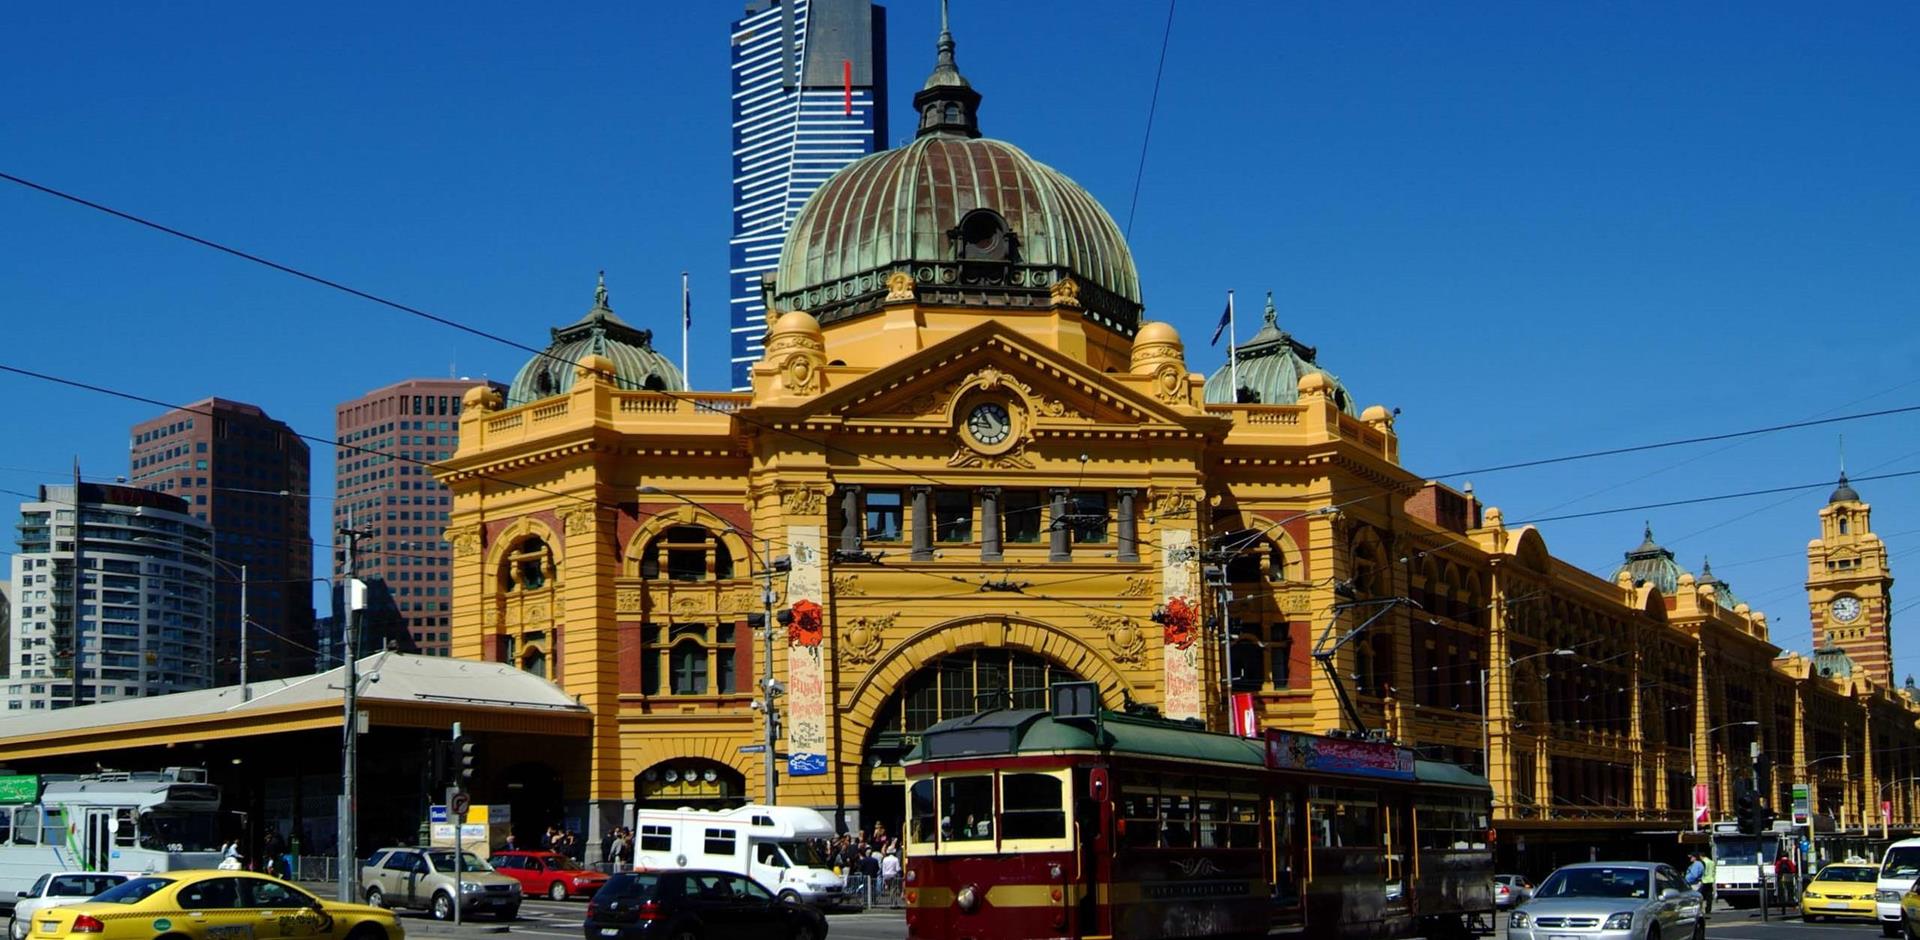 Explore Melbourne's bluestone lanes